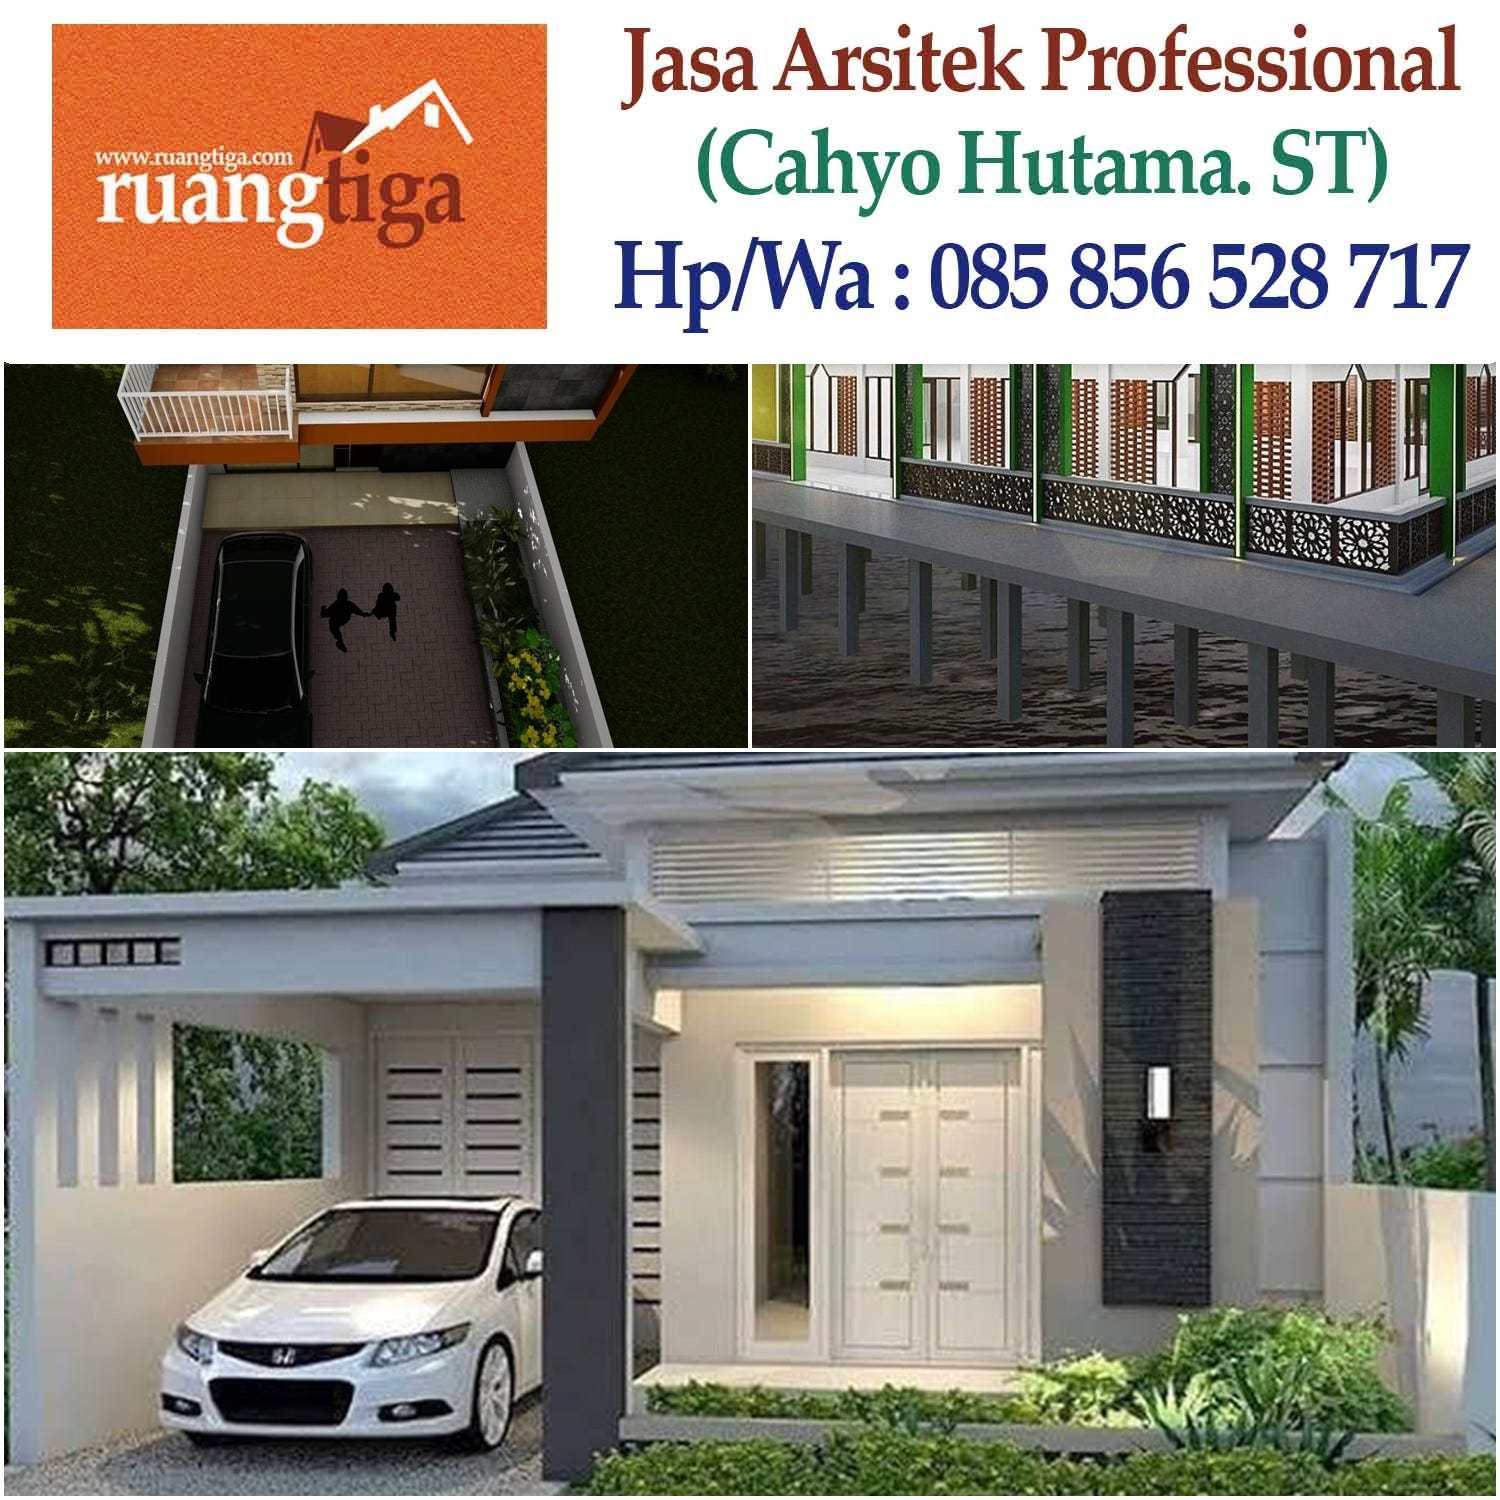 085856528717 Jasa Arsitek Desain Bangun Rumah Kota Bks Jawa